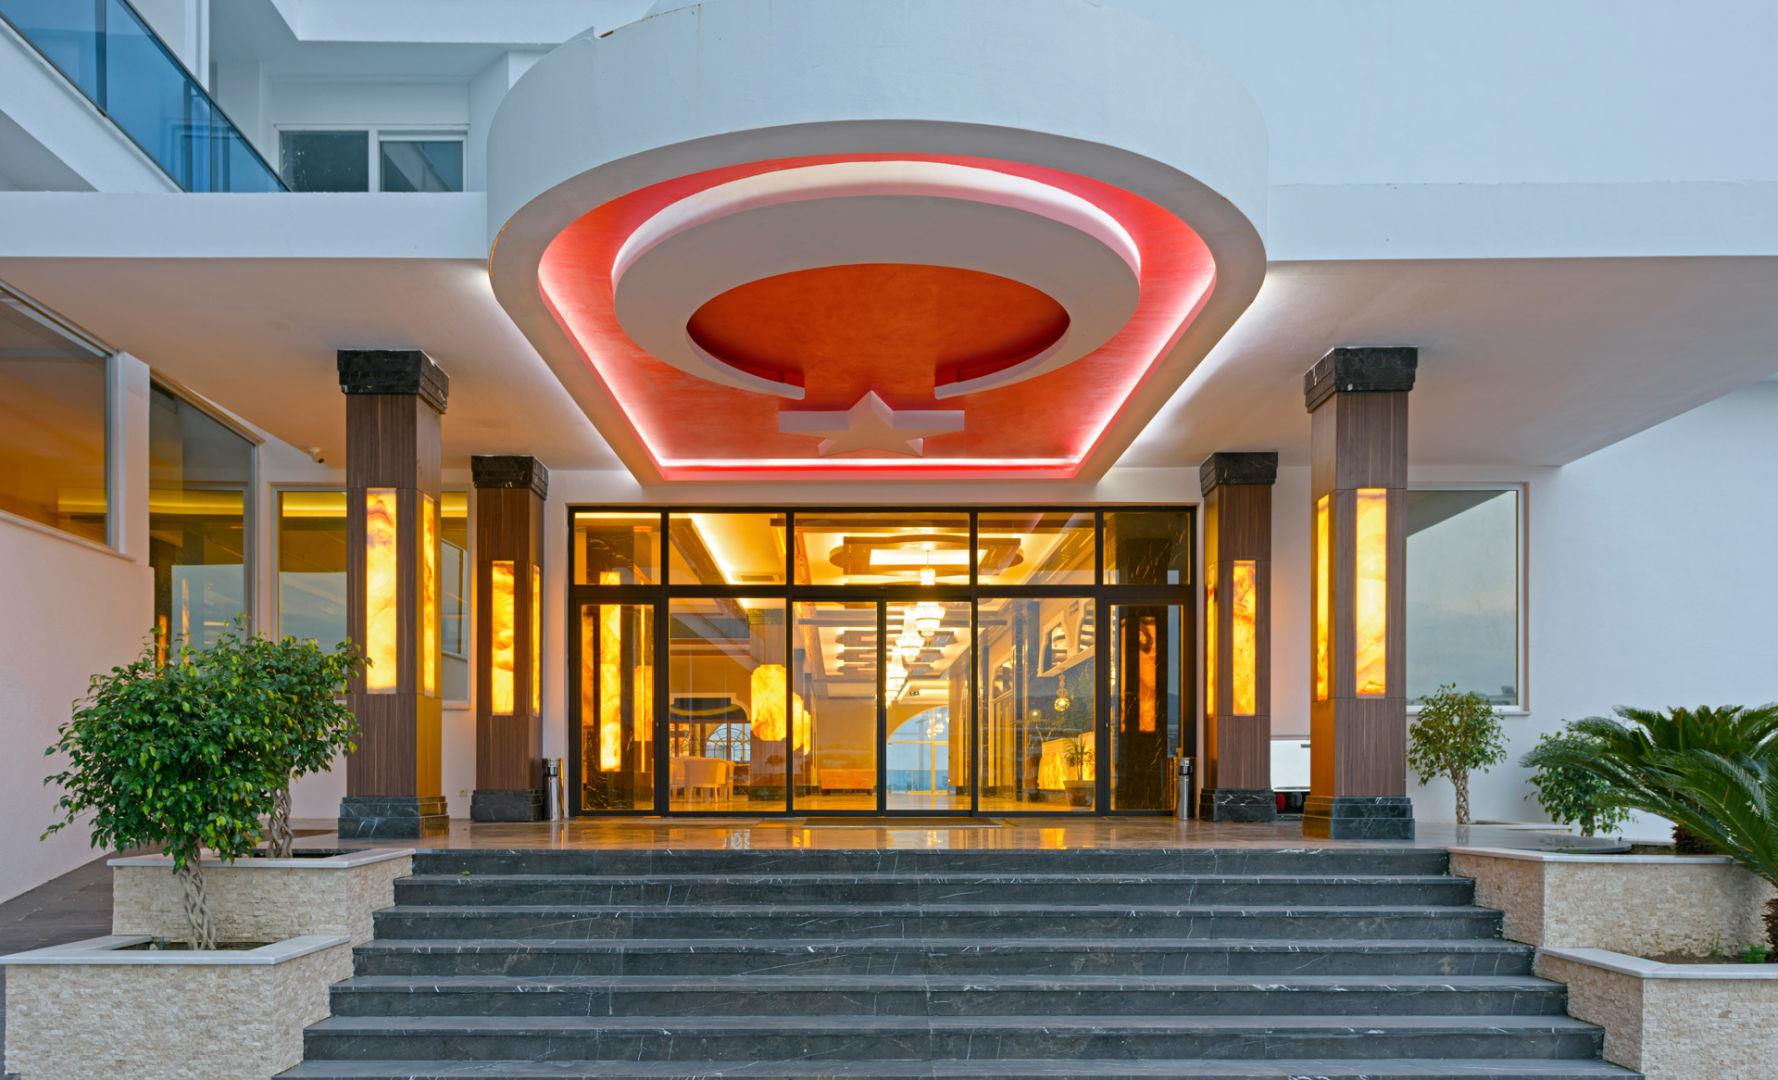 Отель azur resort